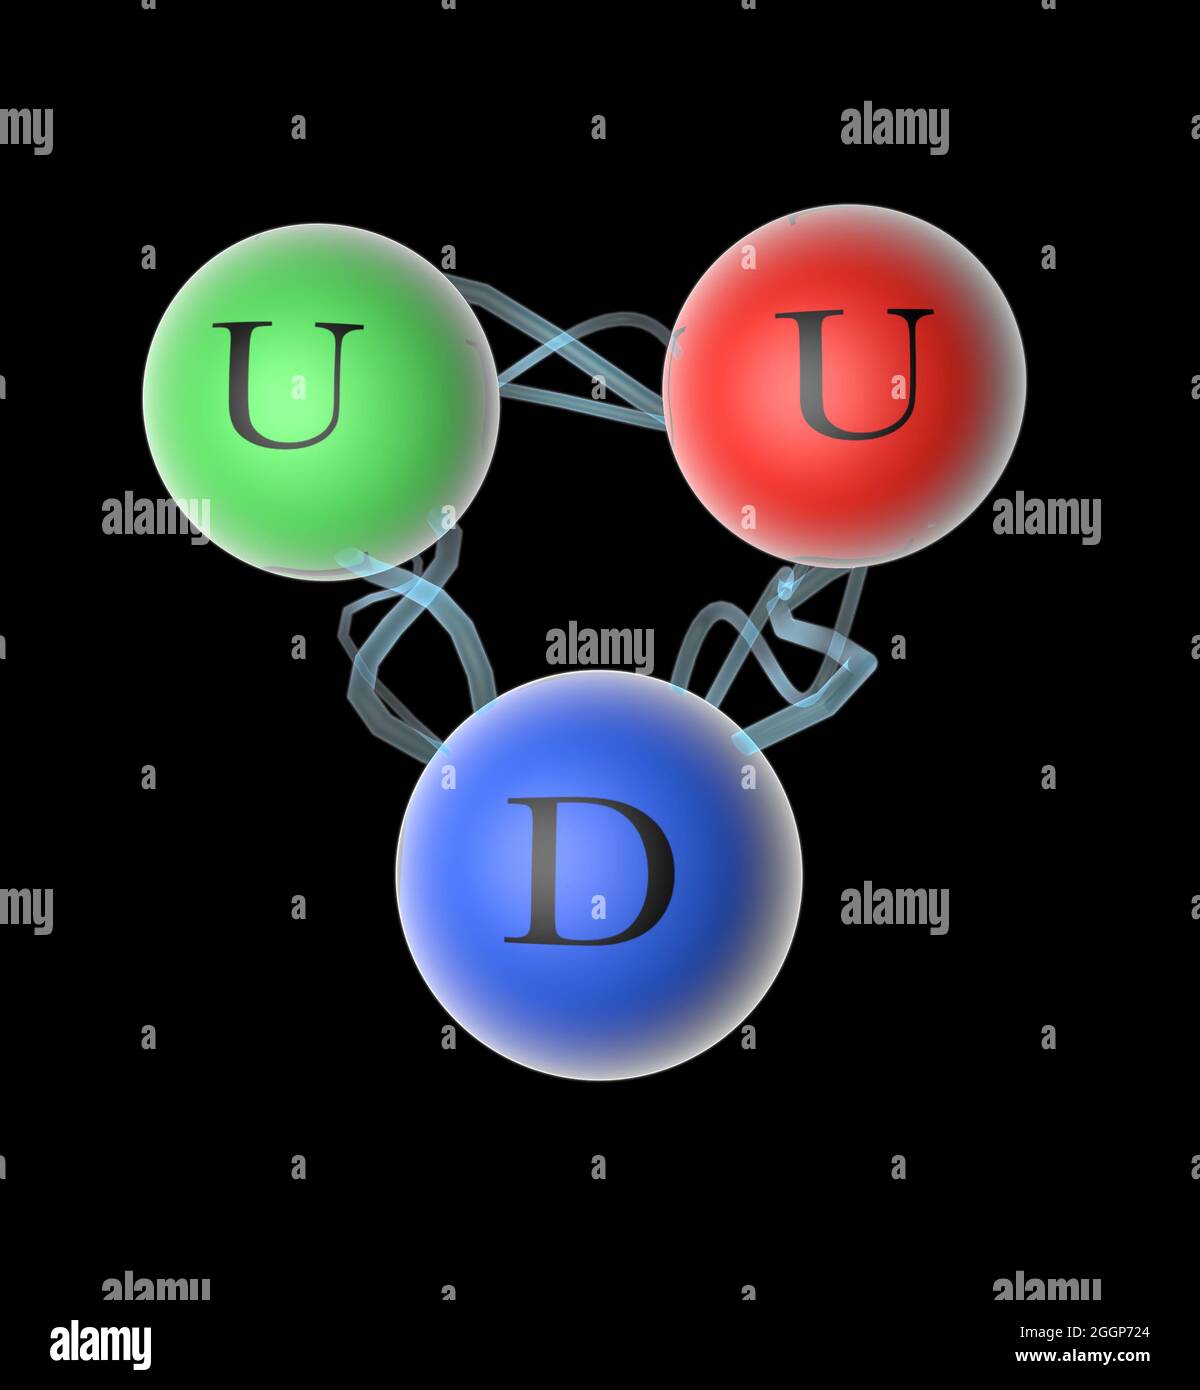 Abbildung eines Protons, eines subatomaren Teilchens mit positiver elektrischer Ladung, das aus zwei up Quarks und einem down Quarks besteht. Stockfoto